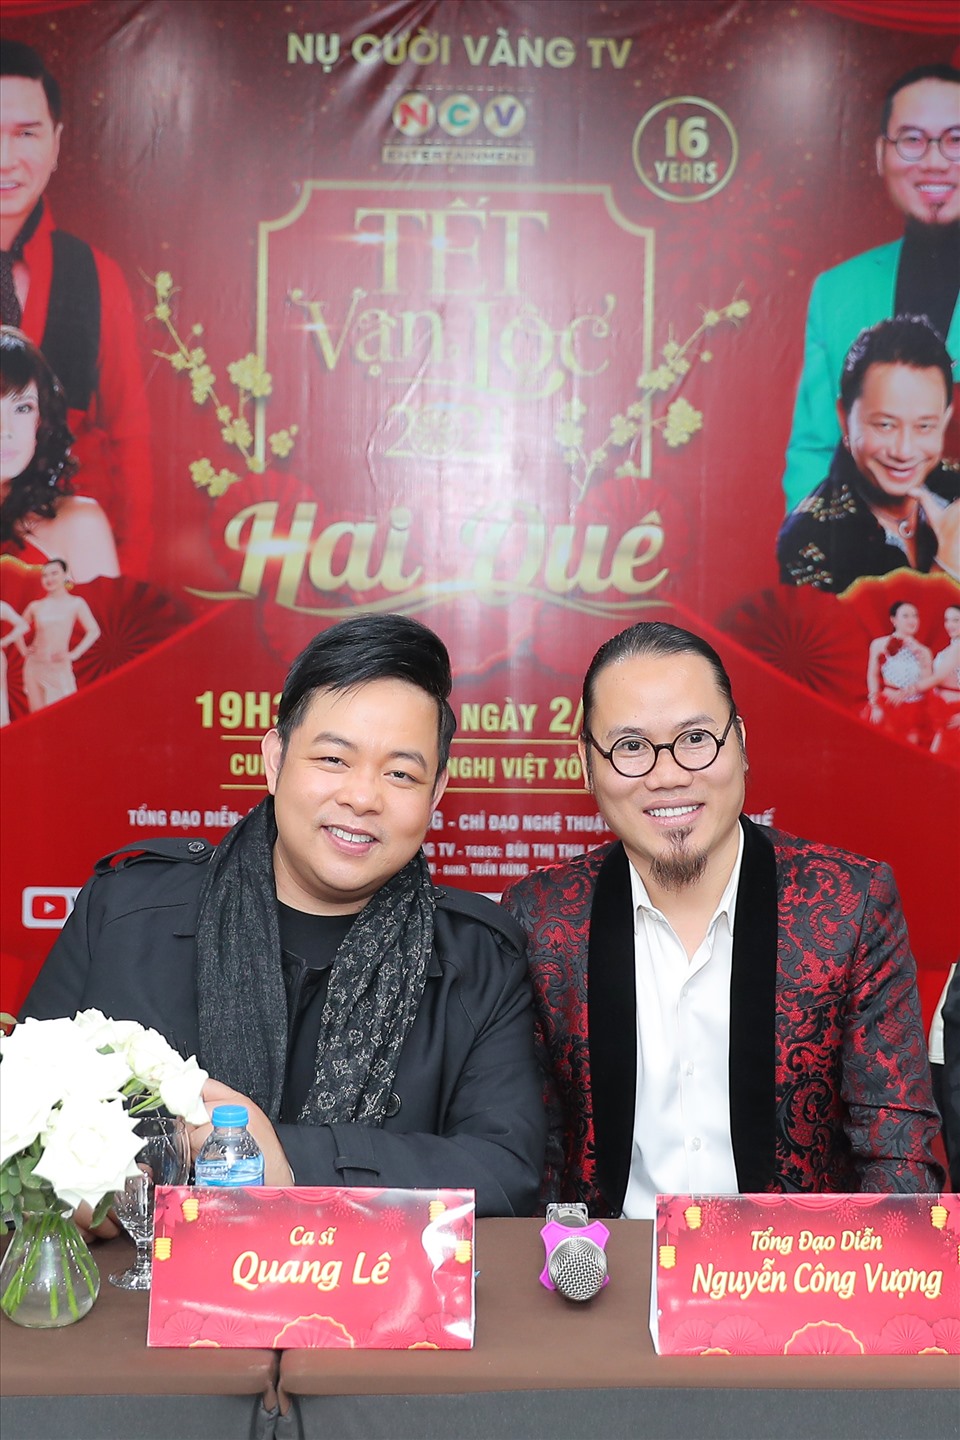 Nam ca sĩ Quang Lê sẽ tham gia trong chương trình “Tết vạn lộc 2021“. Ảnh: BTC.